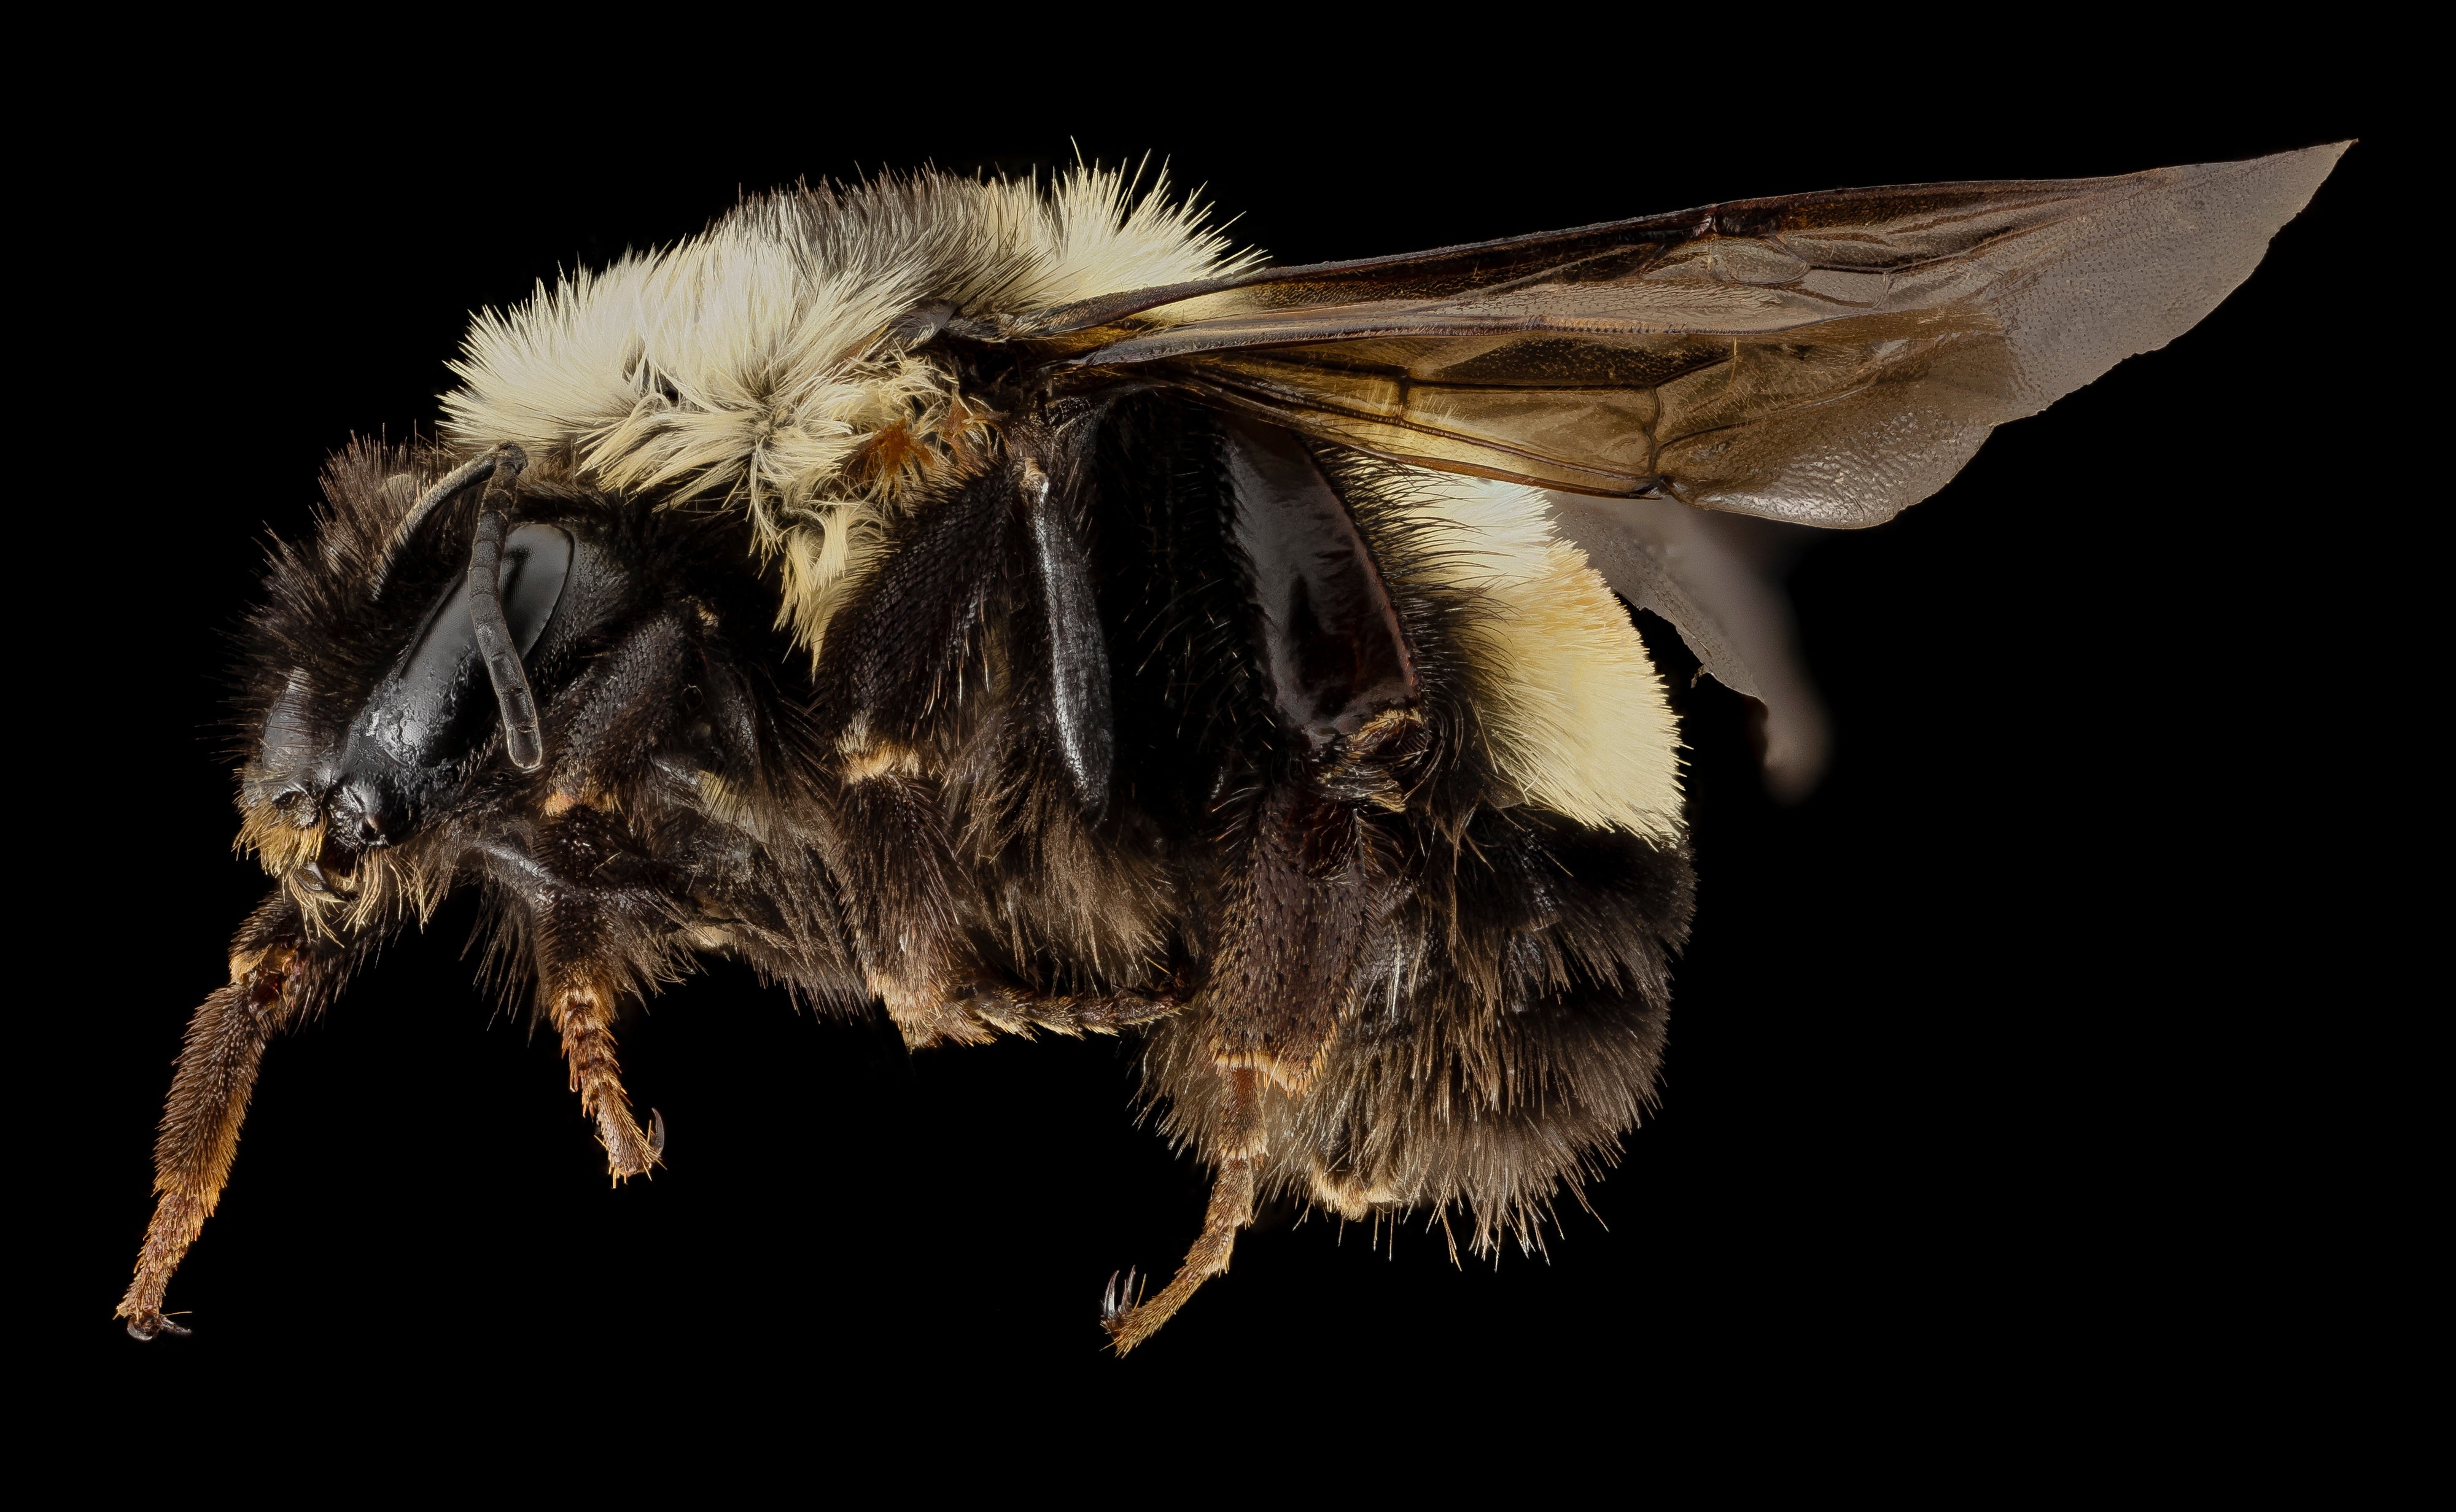 bumblebee vs honey bee